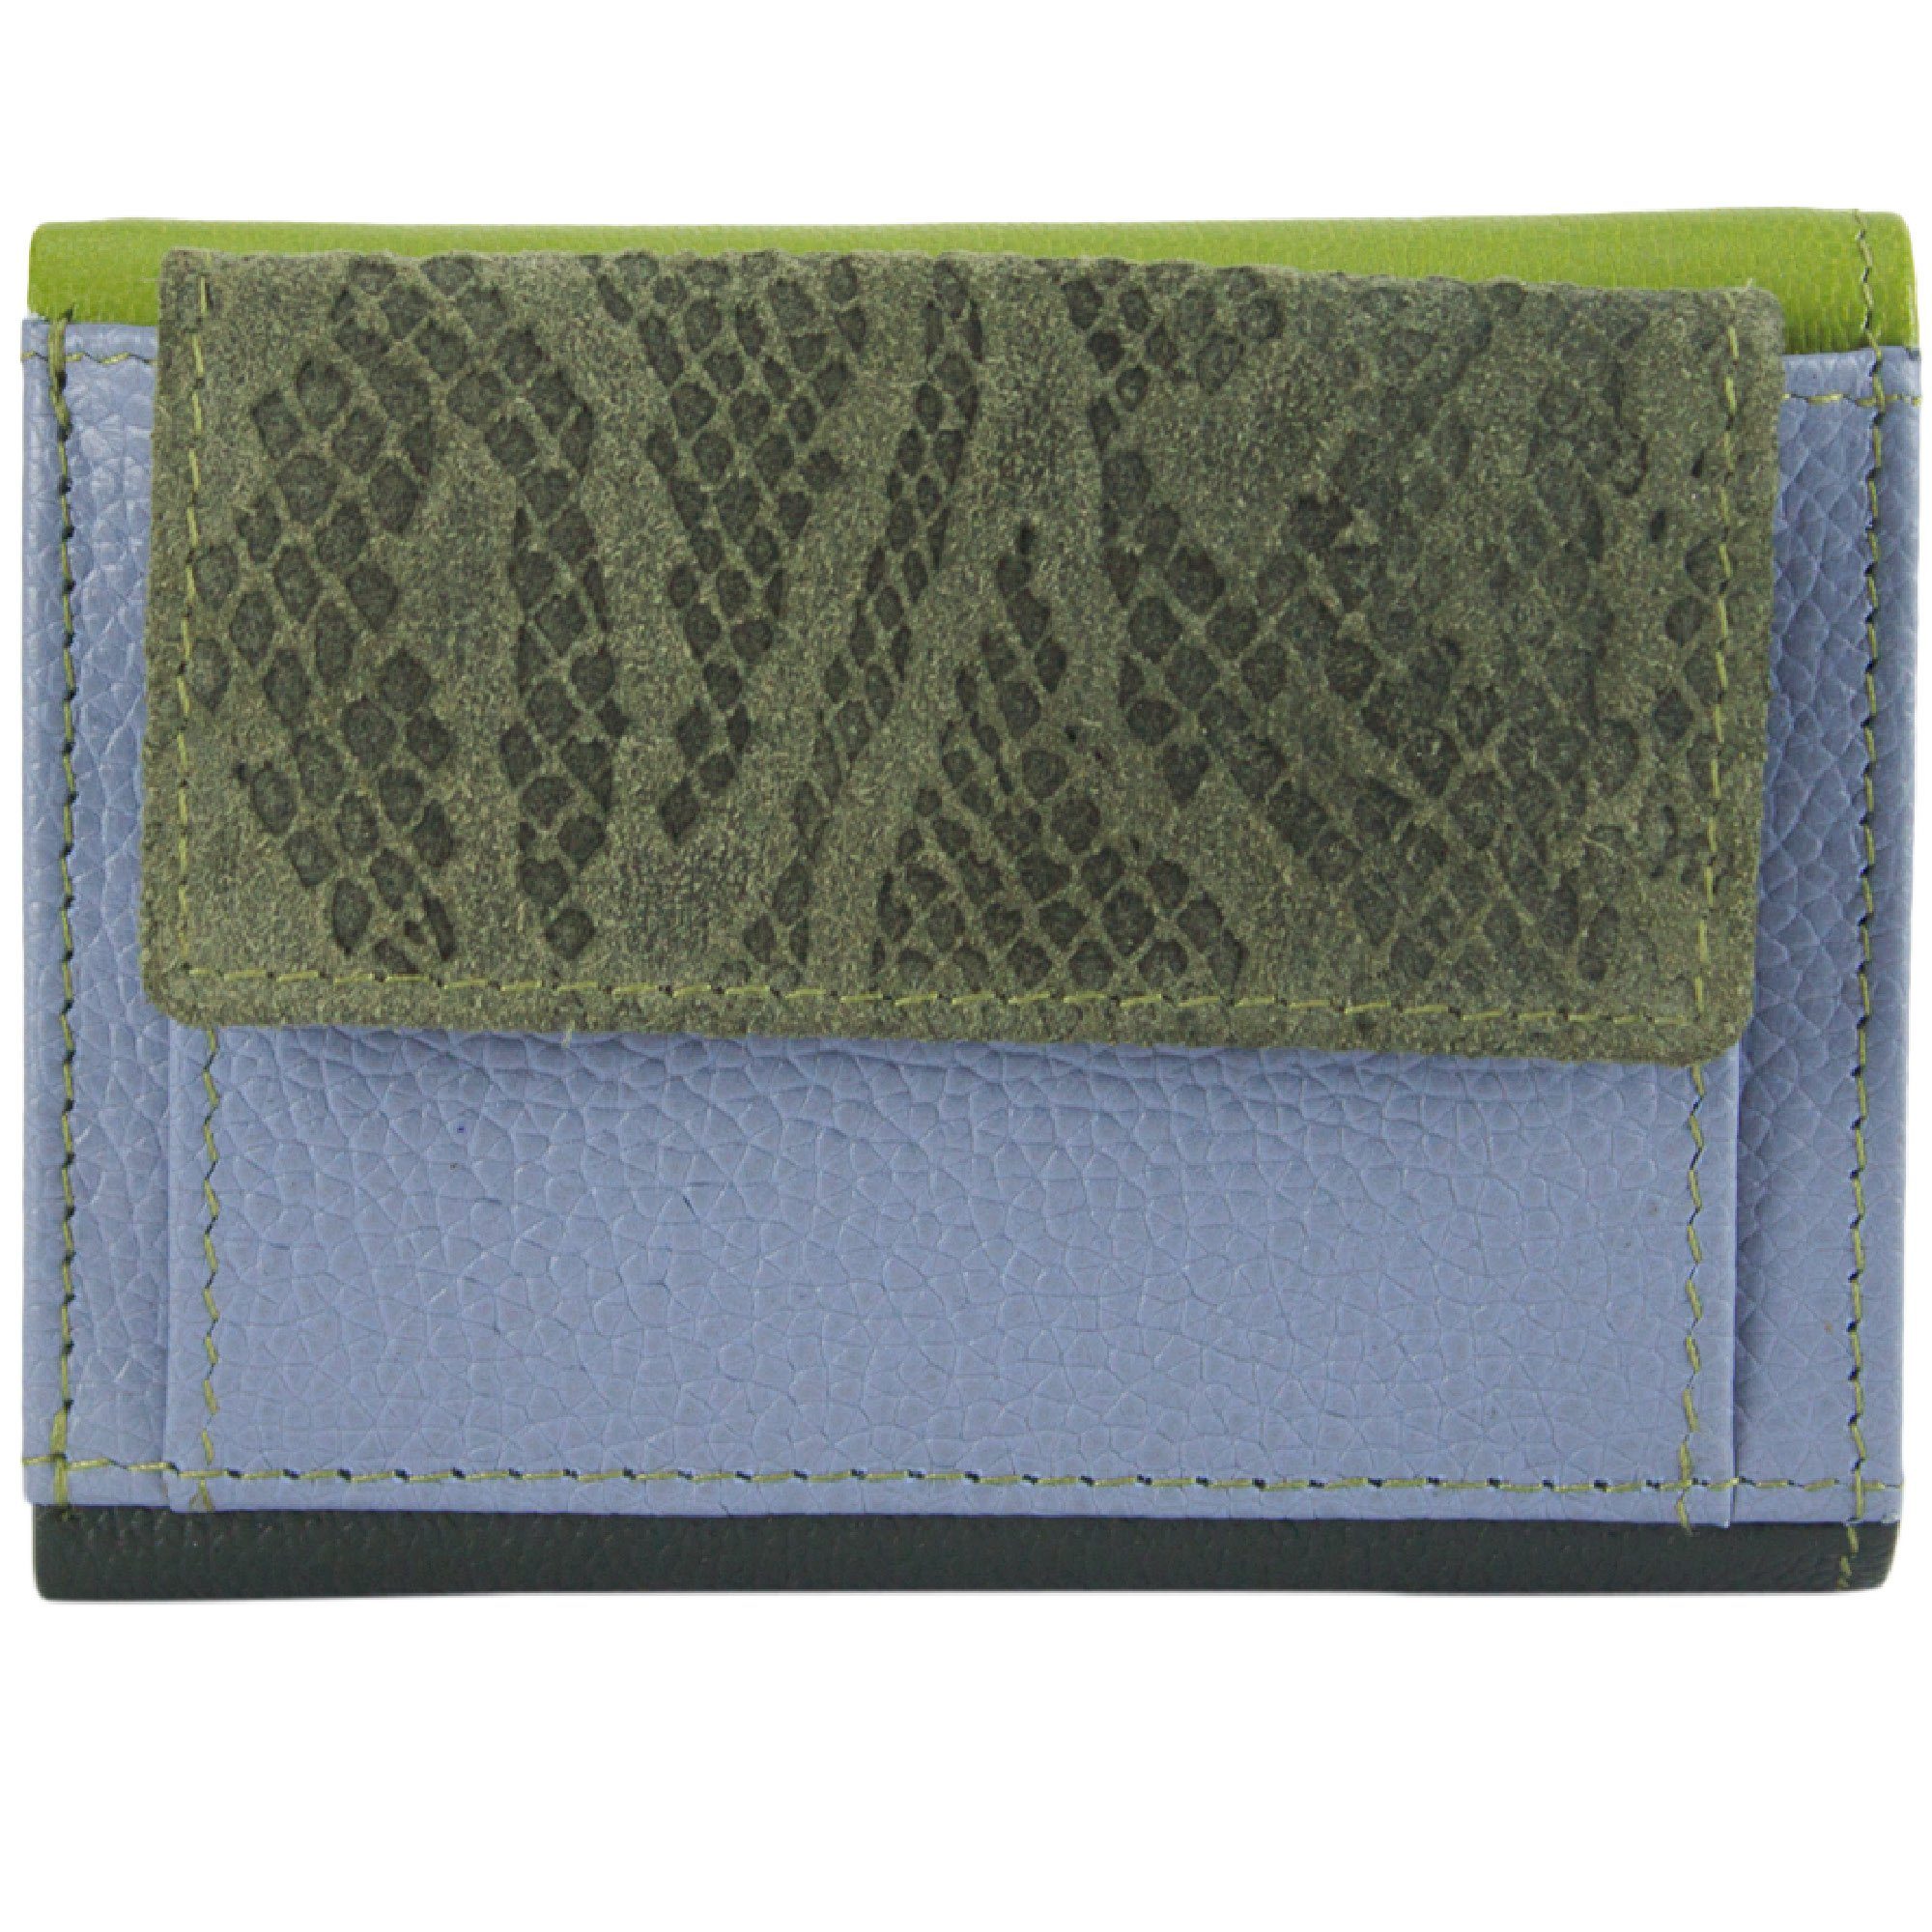 Sunsa Mini Geldbörse Mini klein Leder Geldbörse Geldbeutel Portemonnaie Brieftasche, echt Leder, aus recycelten Lederresten, mit RFID-Schutz, Unisex Khakigrün/hell blau/kiwi grün